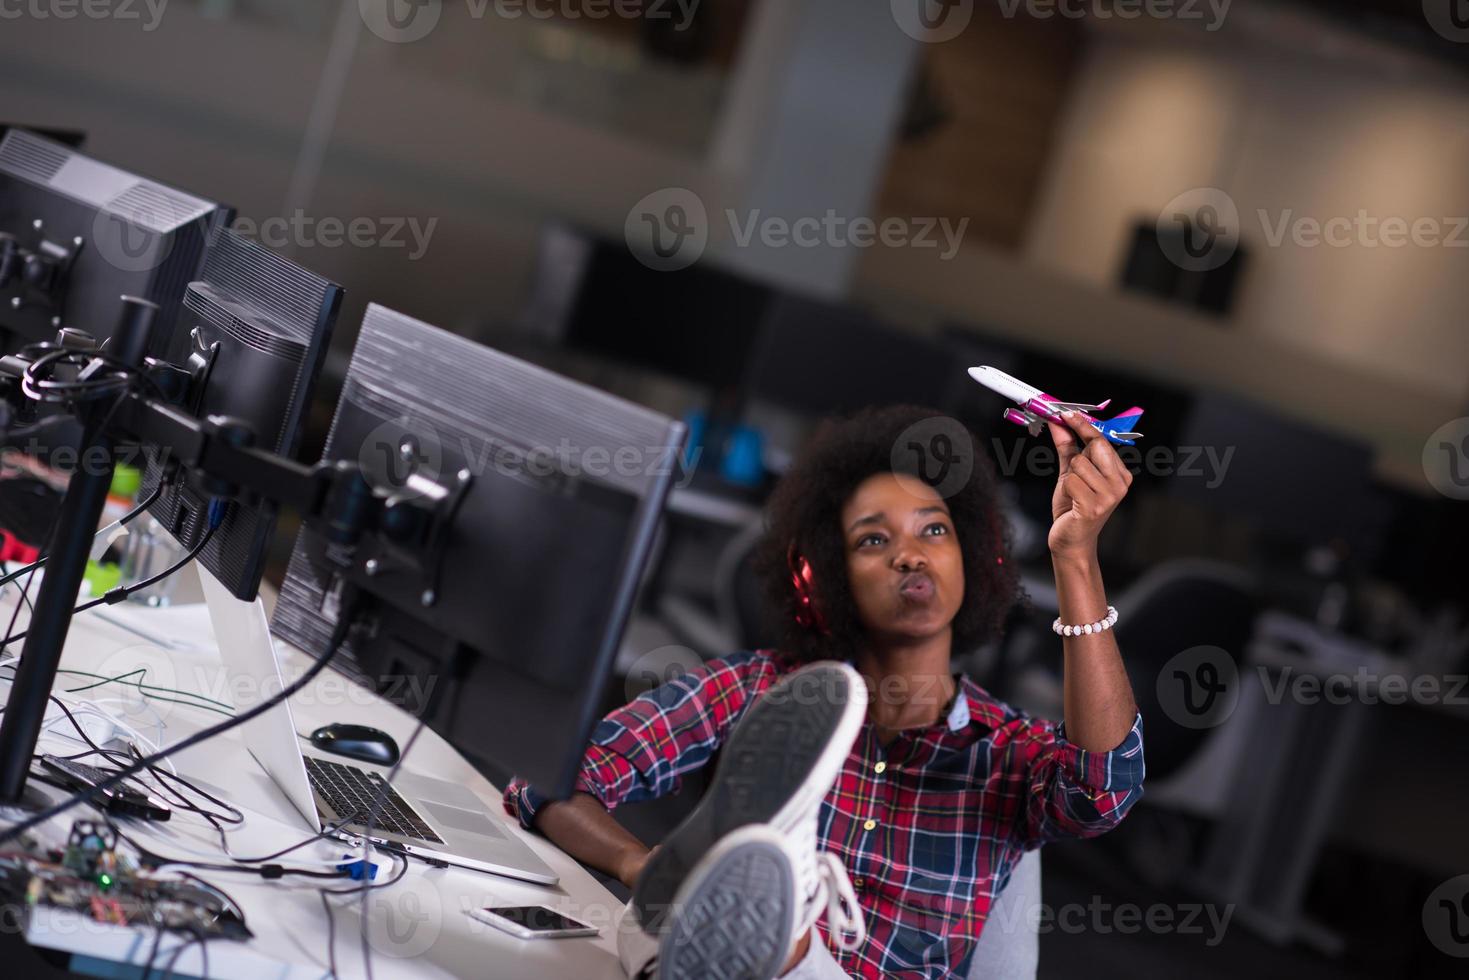 porträtt av en ung framgångsrik afro-amerikansk kvinna i moderna kontor foto